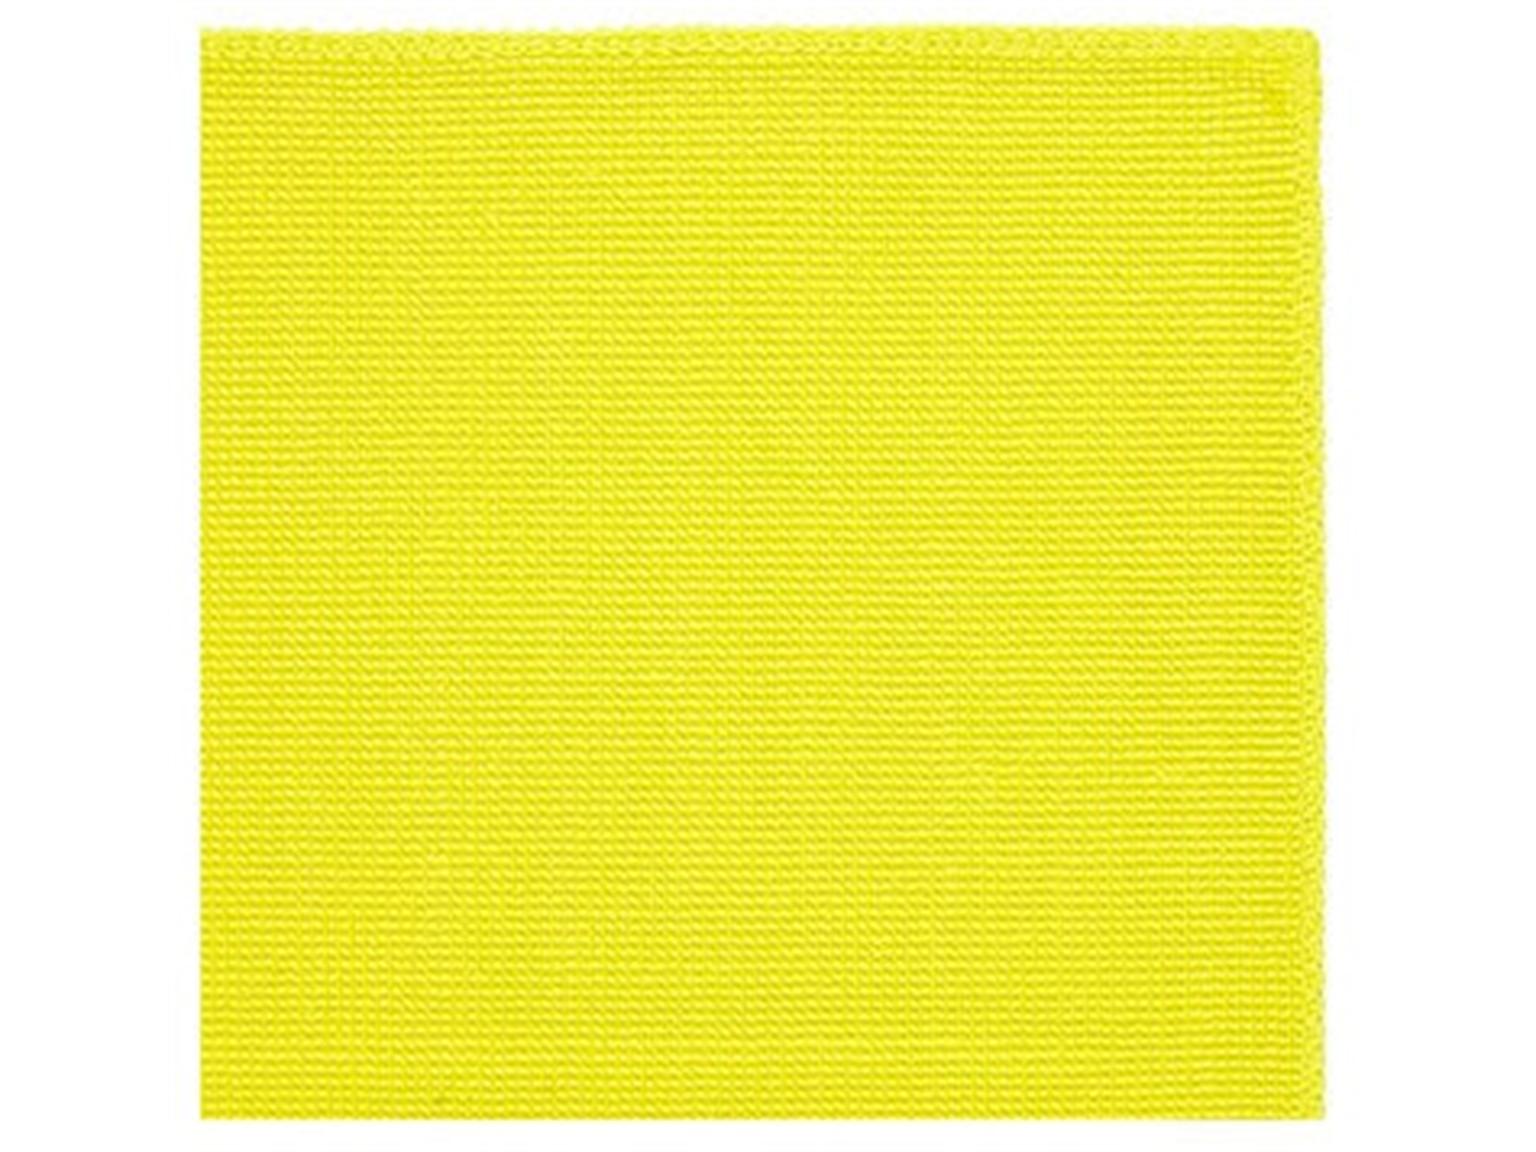 MICROFASERTUECHER 3M  Reinigungstuch 2012, gelb, 36 x 36 cm